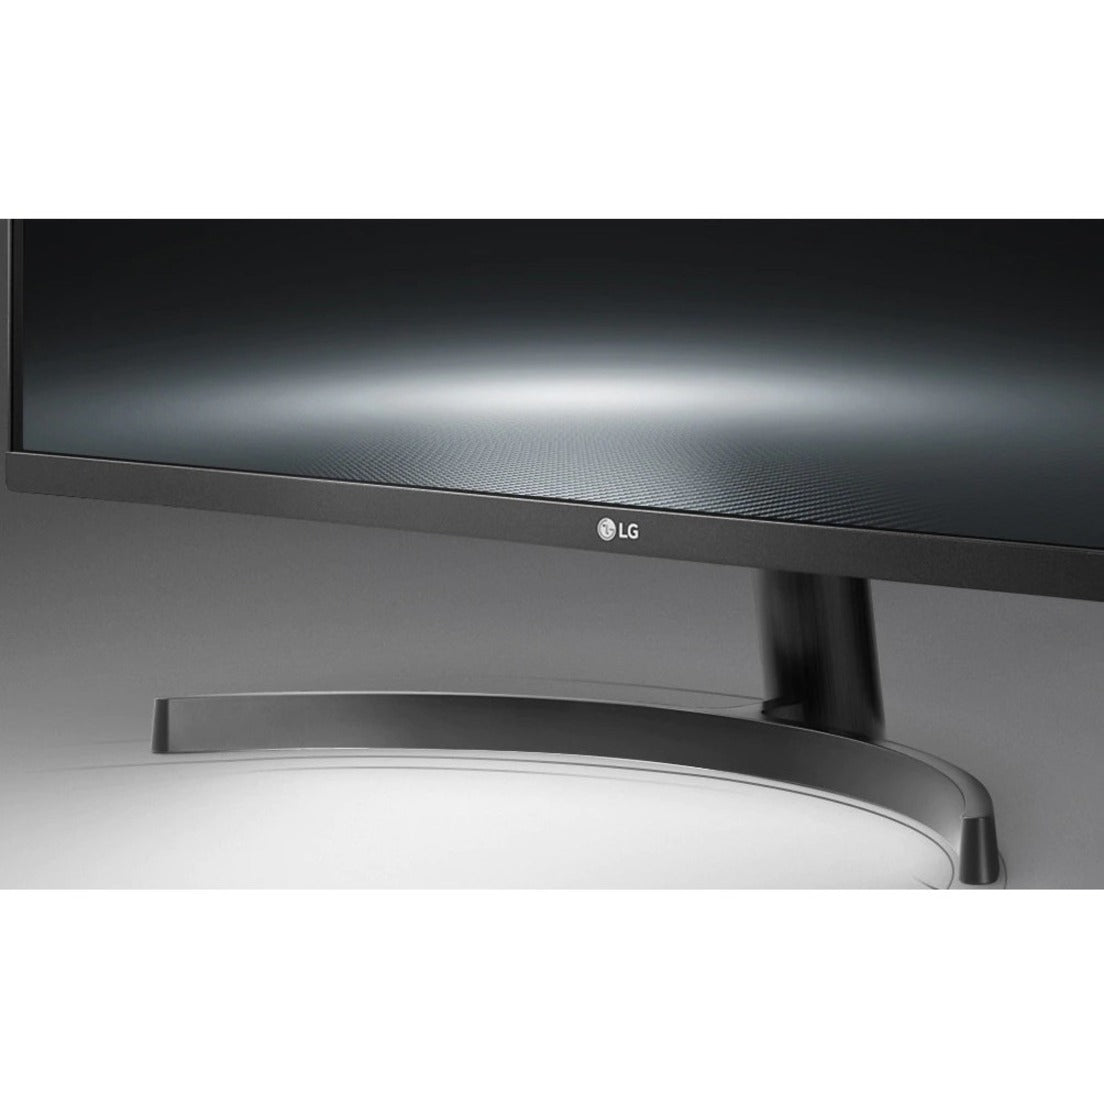 LG 32QN650-B 32" WQHD LCD Monitor - 16:9